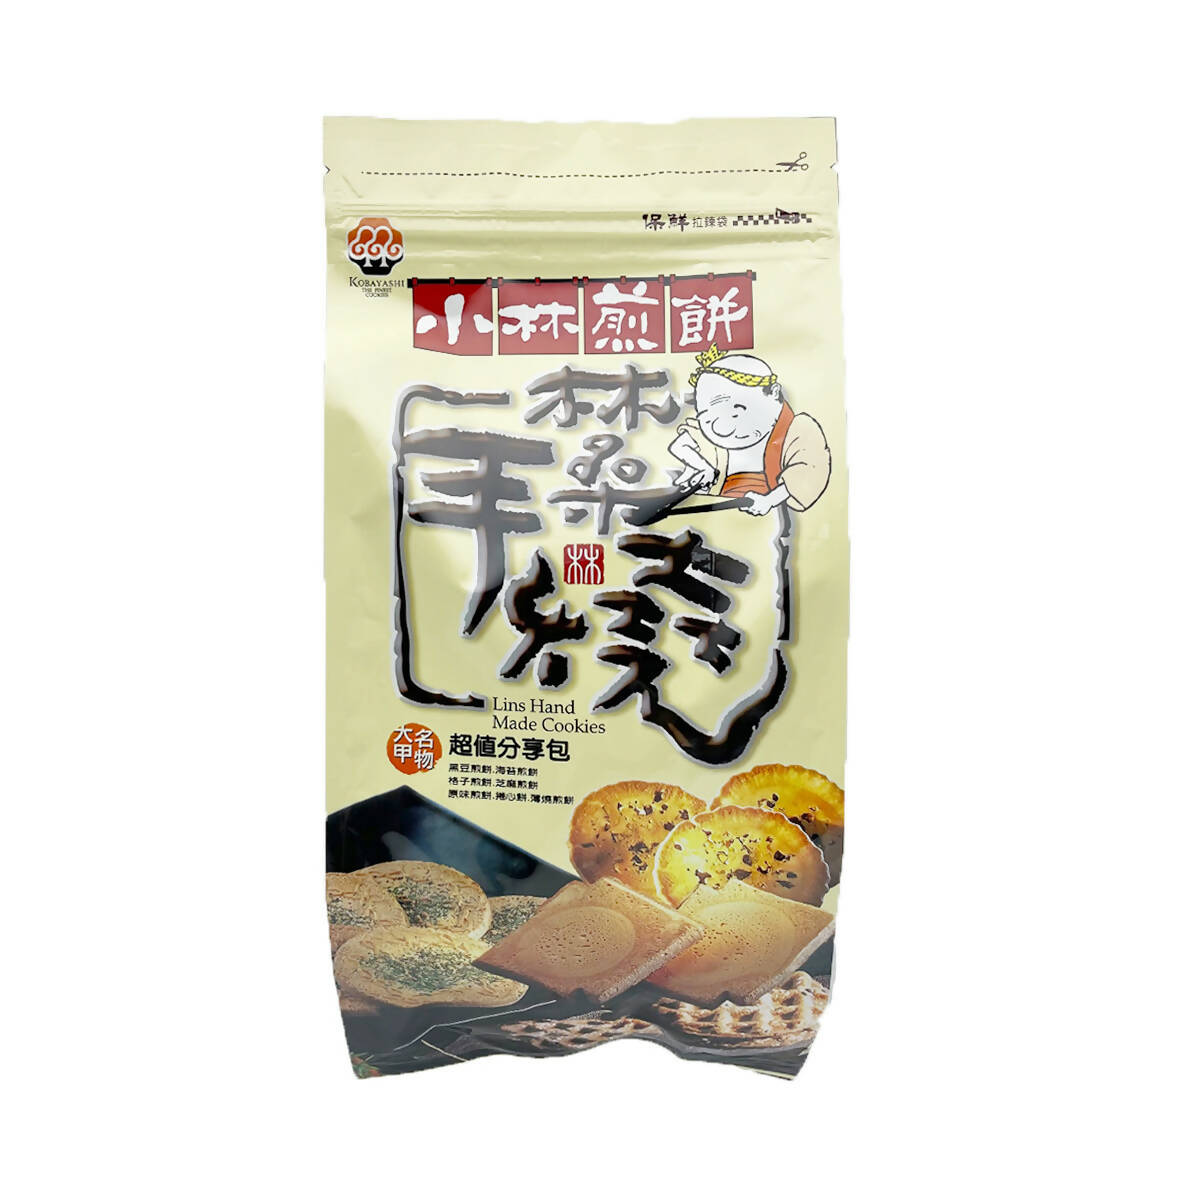 Taiwan direct mail [Kobayashi Pancake] KOBAYASHI Lin Sang Hand Burned Value Sharing Pack 7 Flavor 300g 